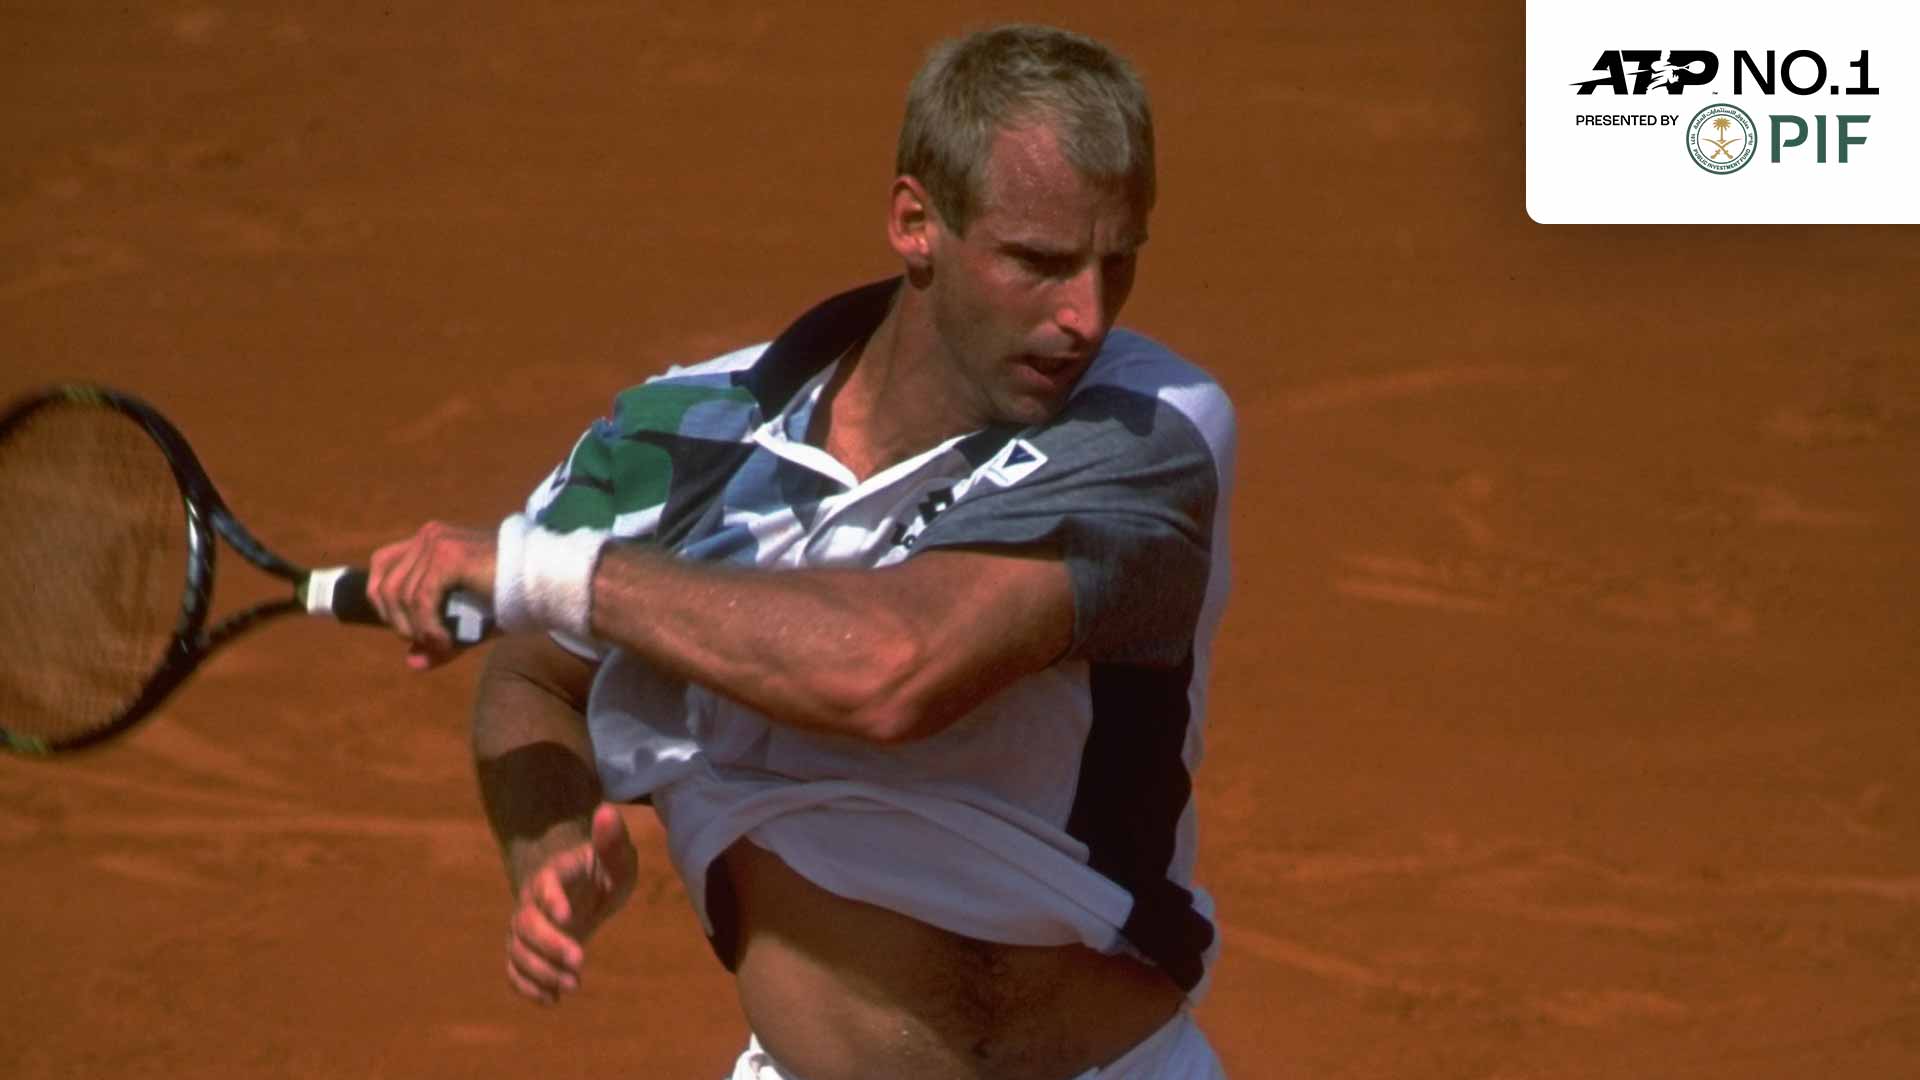 Thomas Muster ascendió por primera vez al número 1 del ranking PIF ATP en 1996.